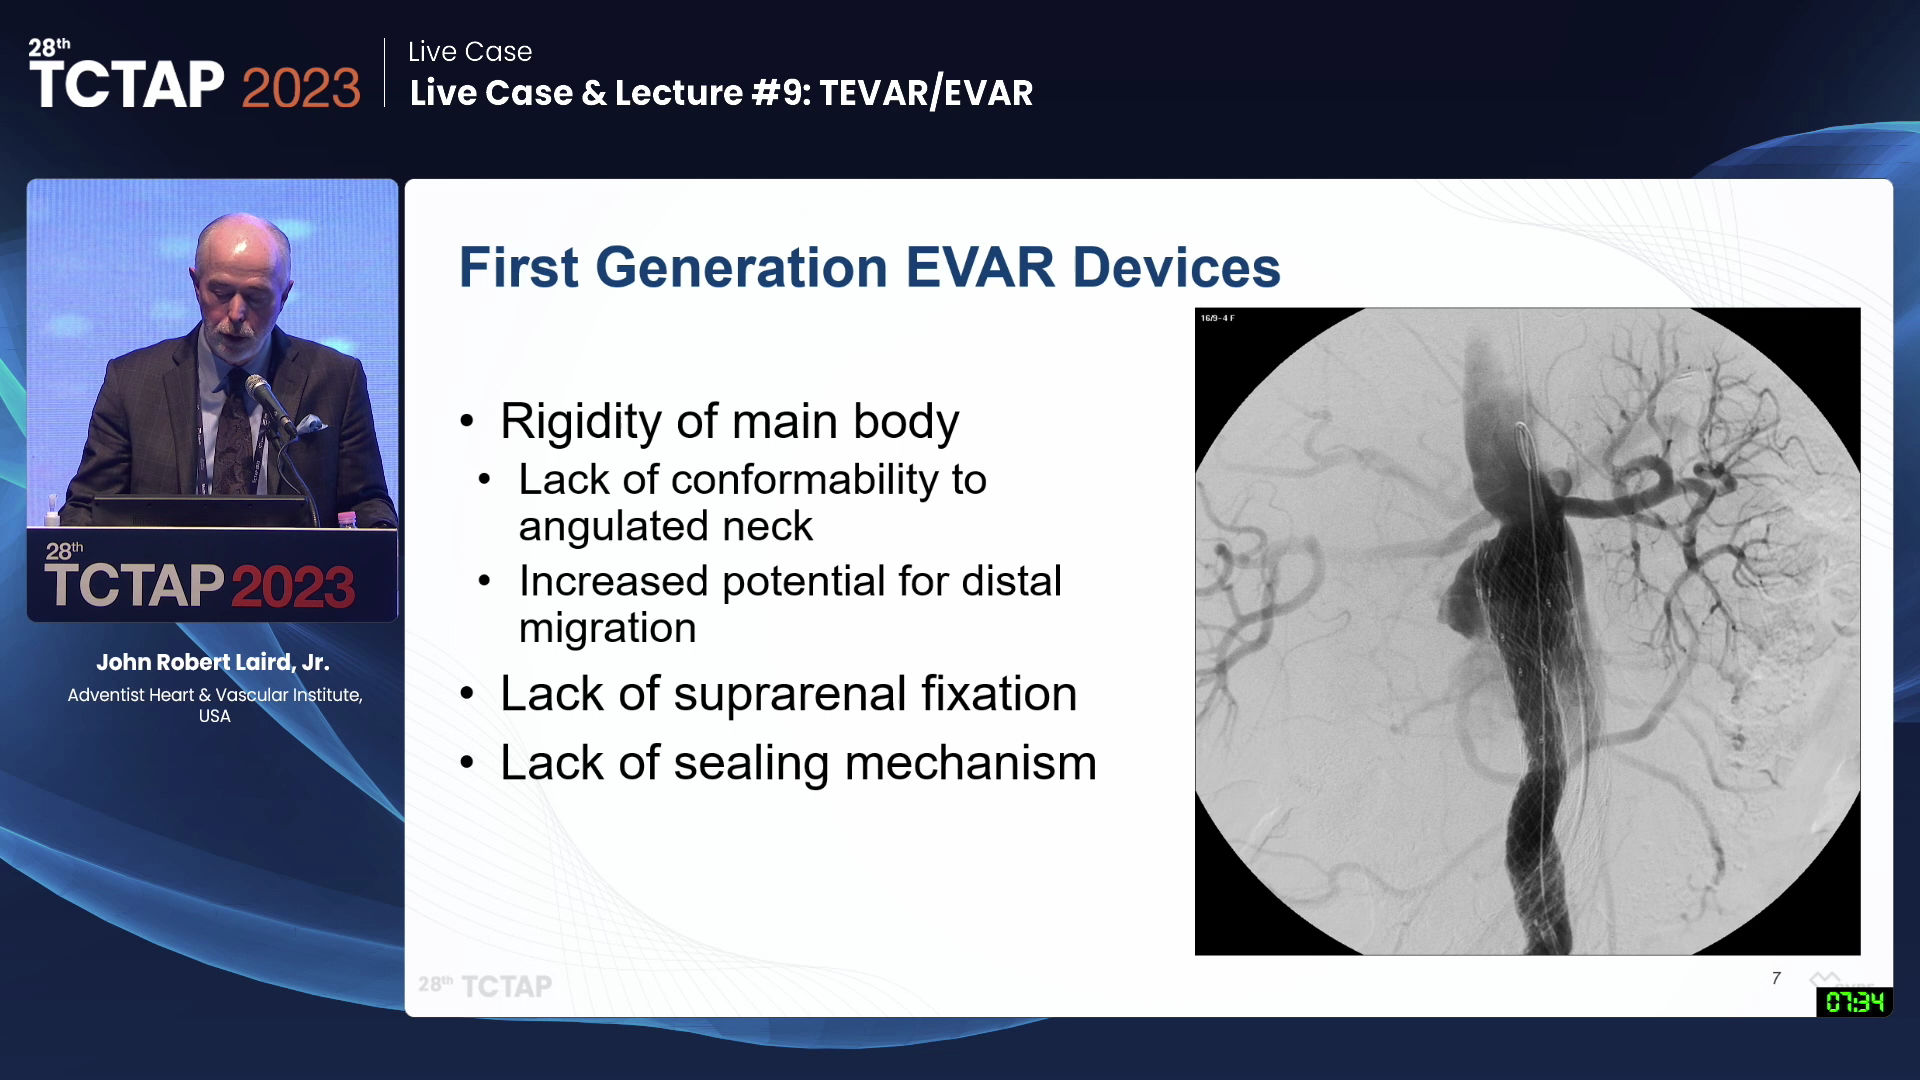 Live Case & Lecture #9: TEVAR/EVAR